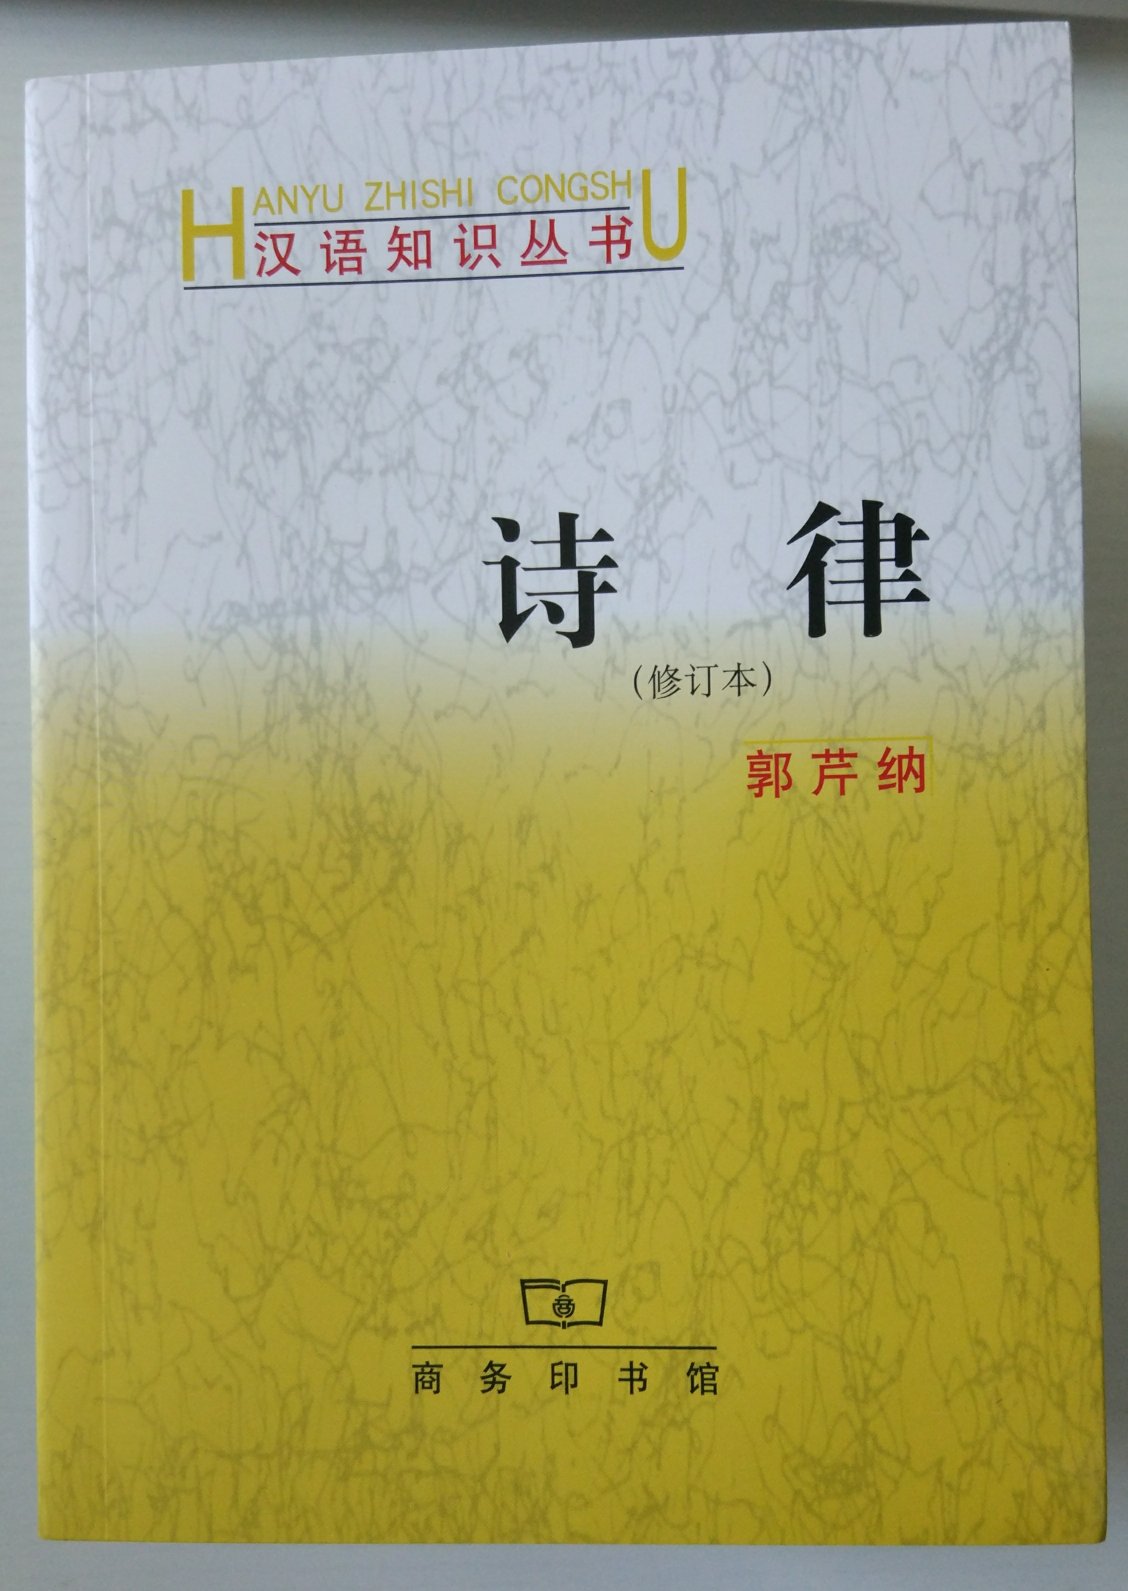 商务印书馆的汉语知识丛书系列真的是很棒的一套图书，打算对汉语言有深入了解的人或者感兴趣的人，应该买回来看看。值得推荐购买阅读收藏！